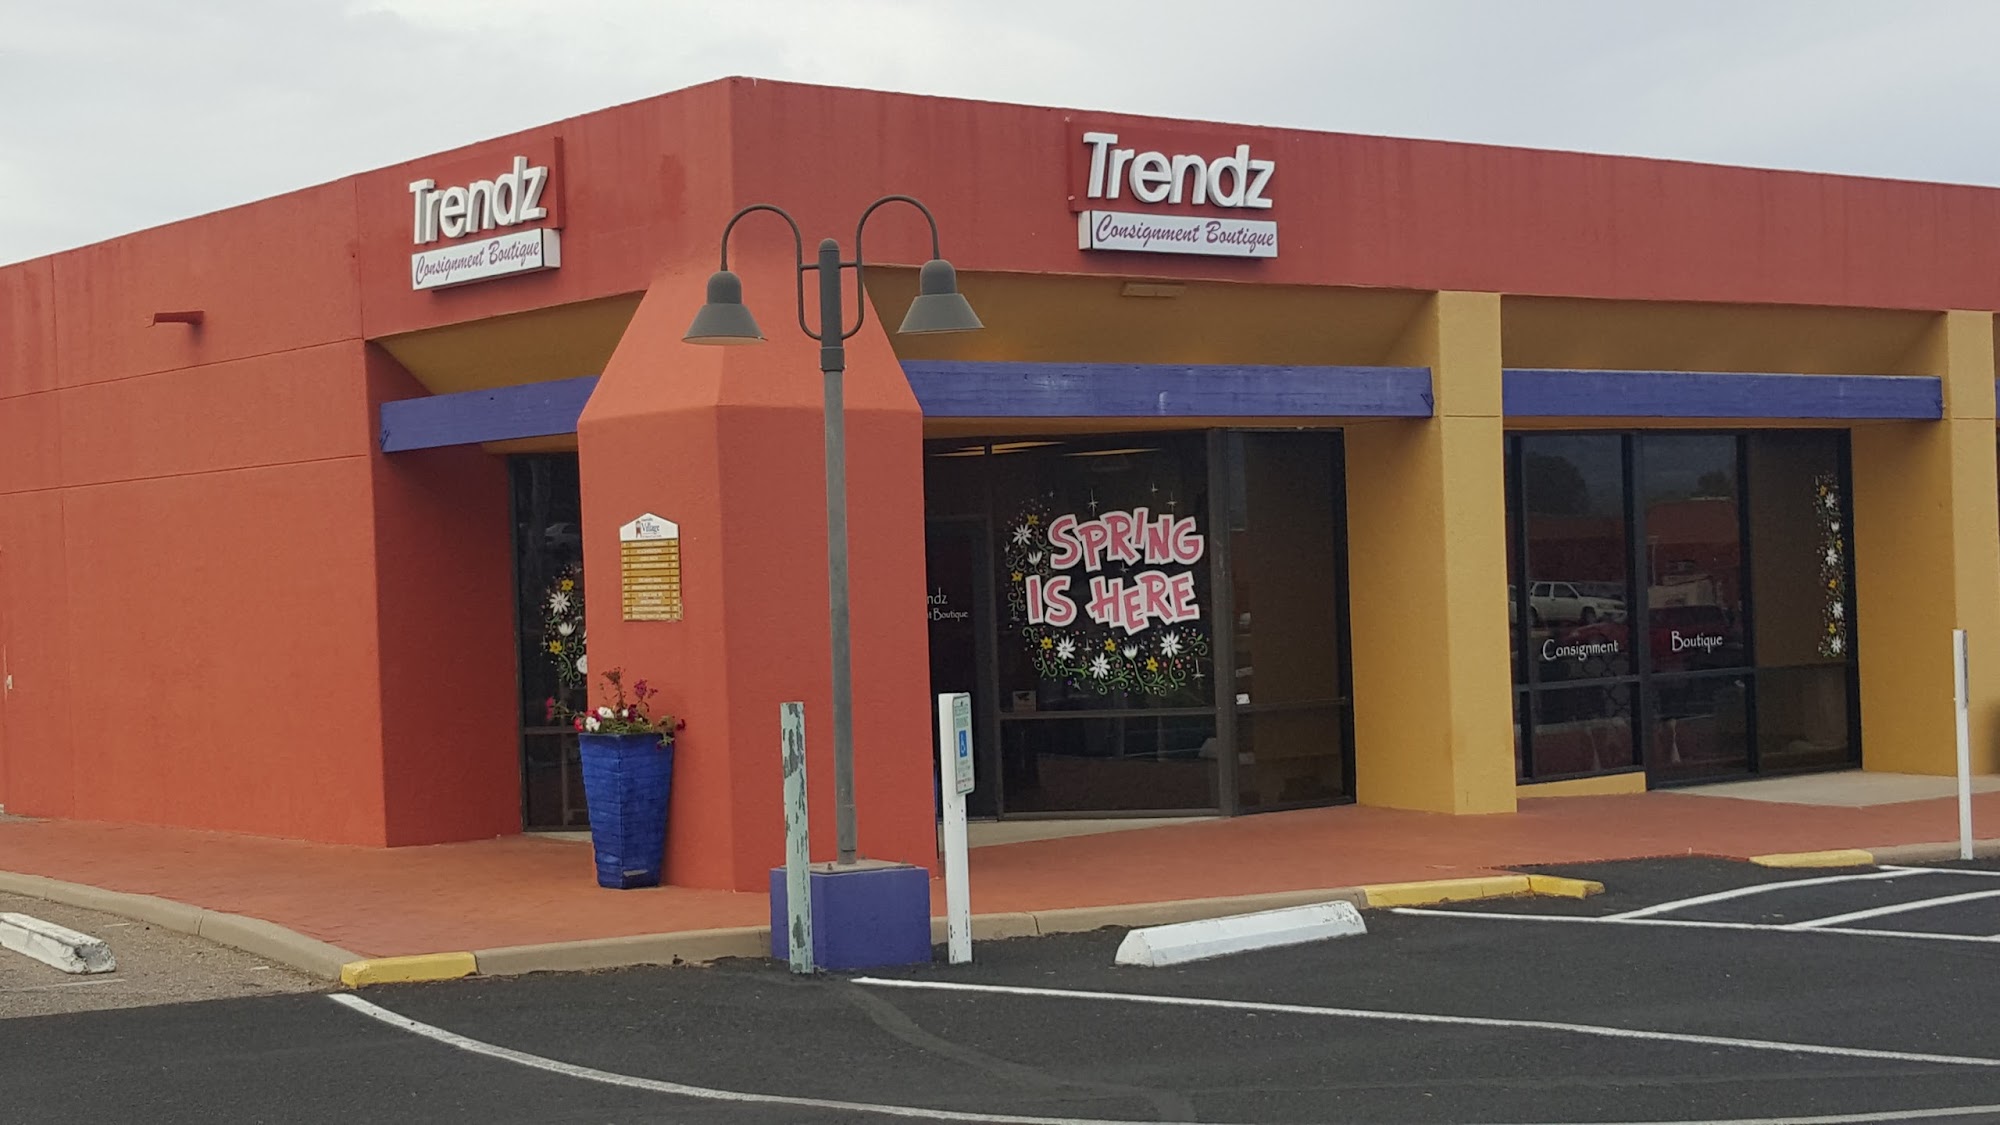 Trendz Consignment Boutique